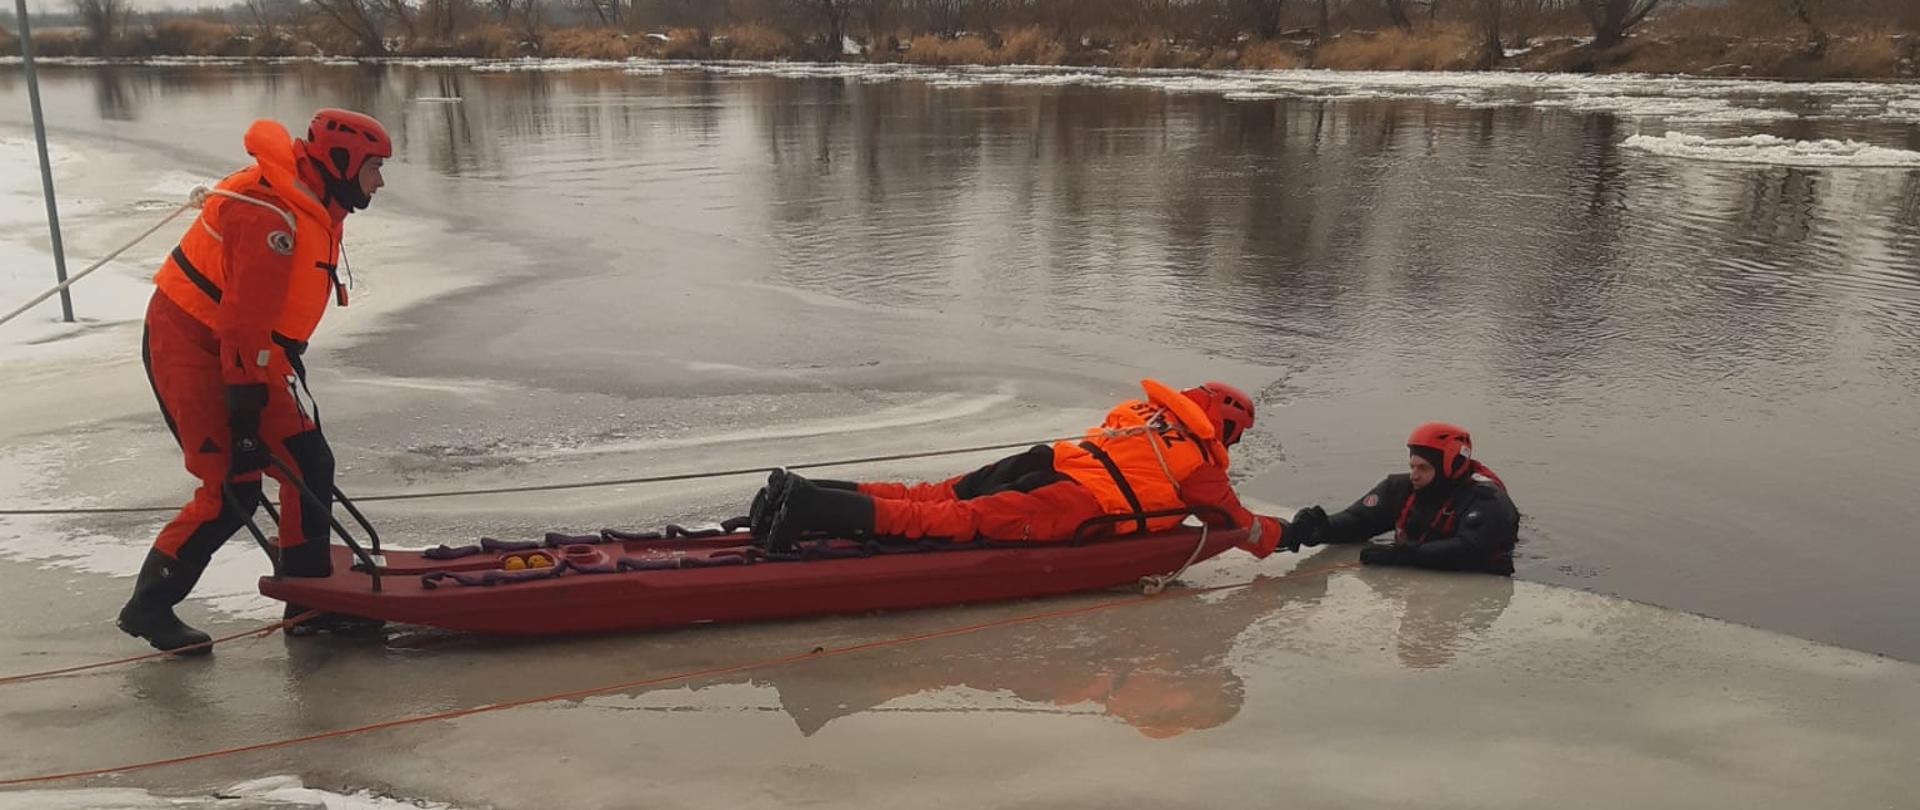 Strażacy na saniach wodno-lodowych podejmują osobę poszkodowaną z wody pod którą załamał się lód.